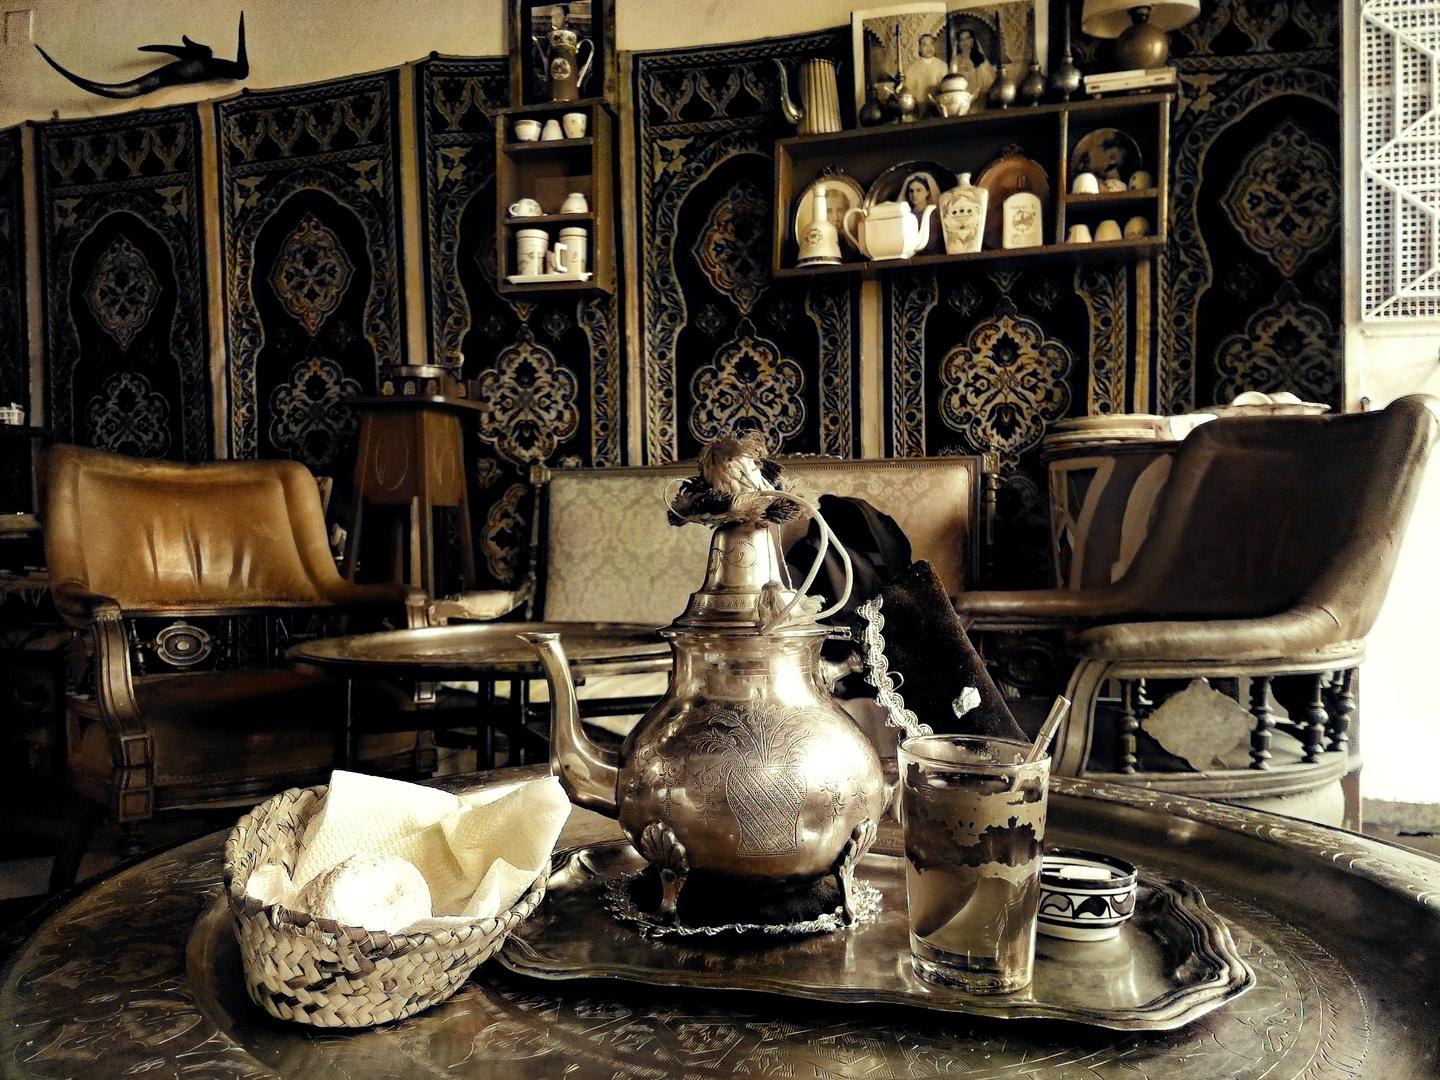 Teatime in Tanger